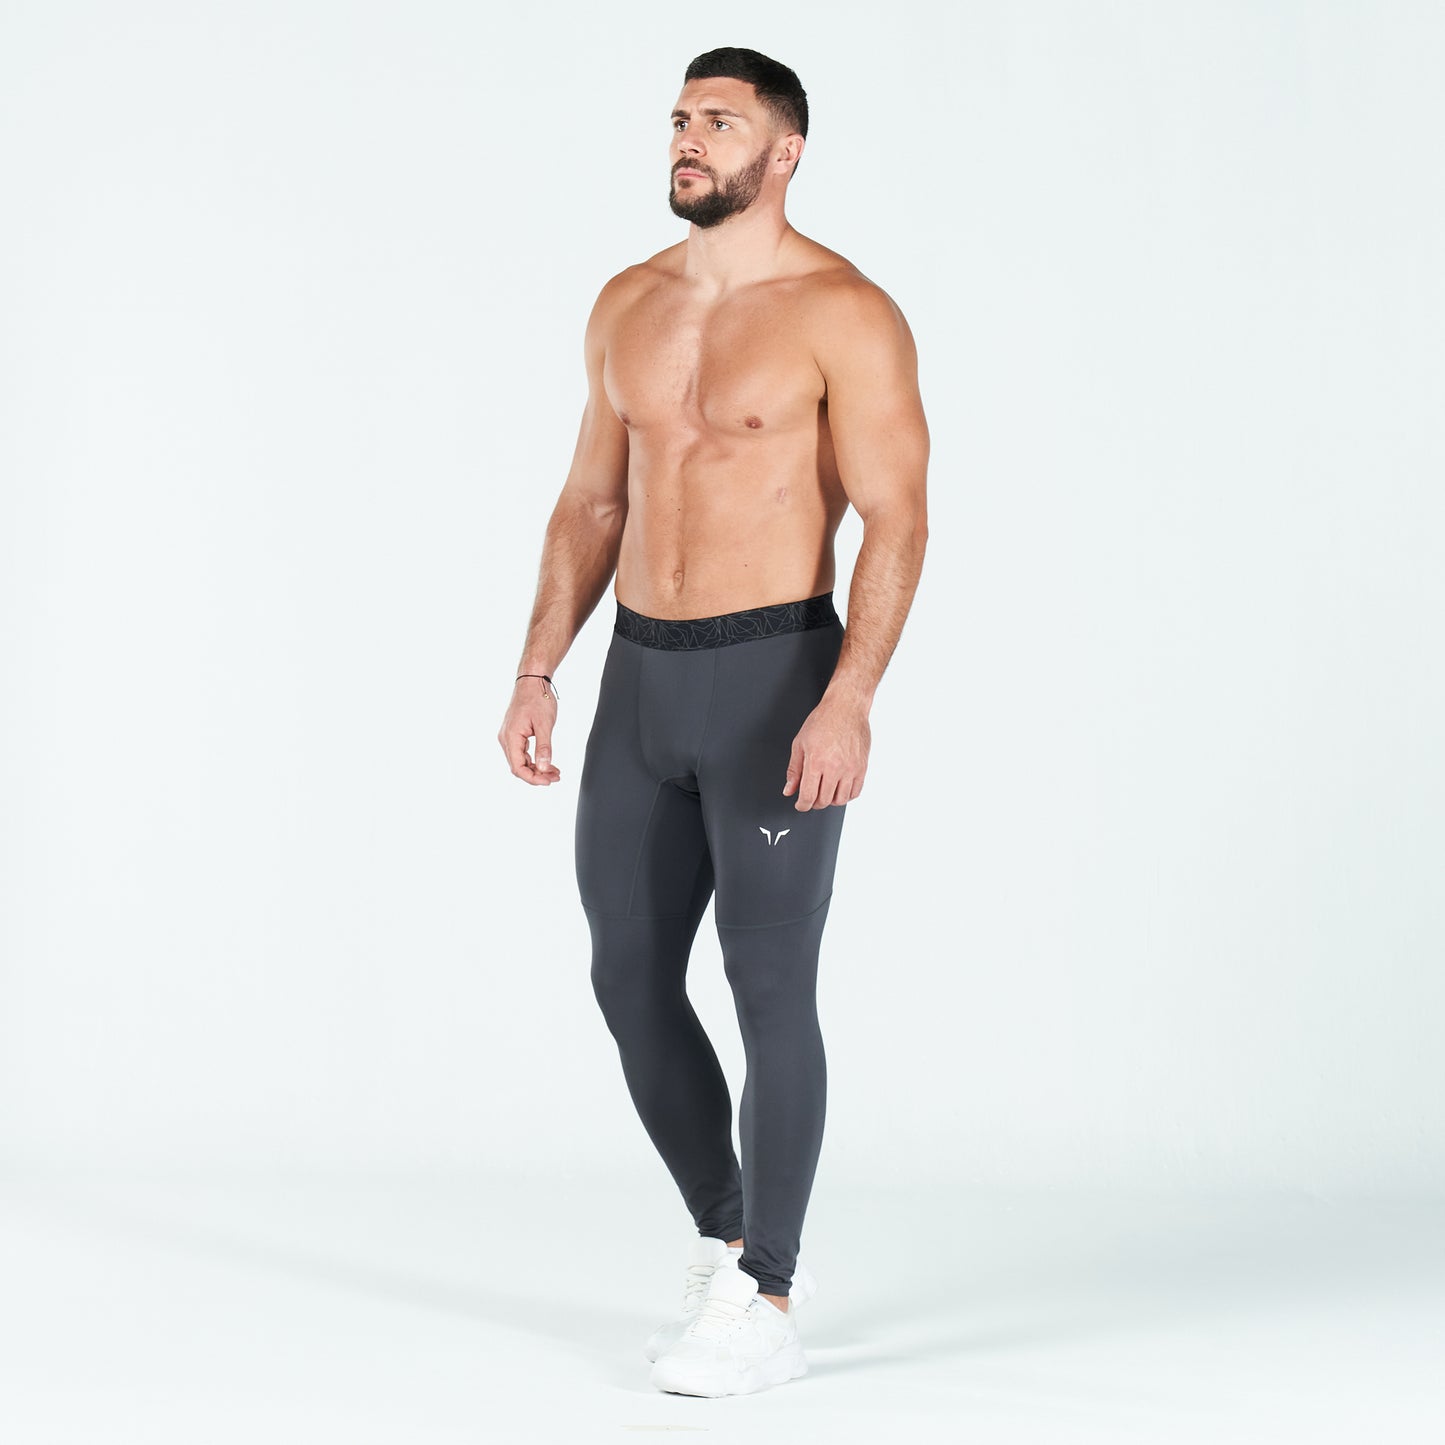 squatwolf-gym-wear-statement-dryflex-tights-asphalt-workout-tights-for-men